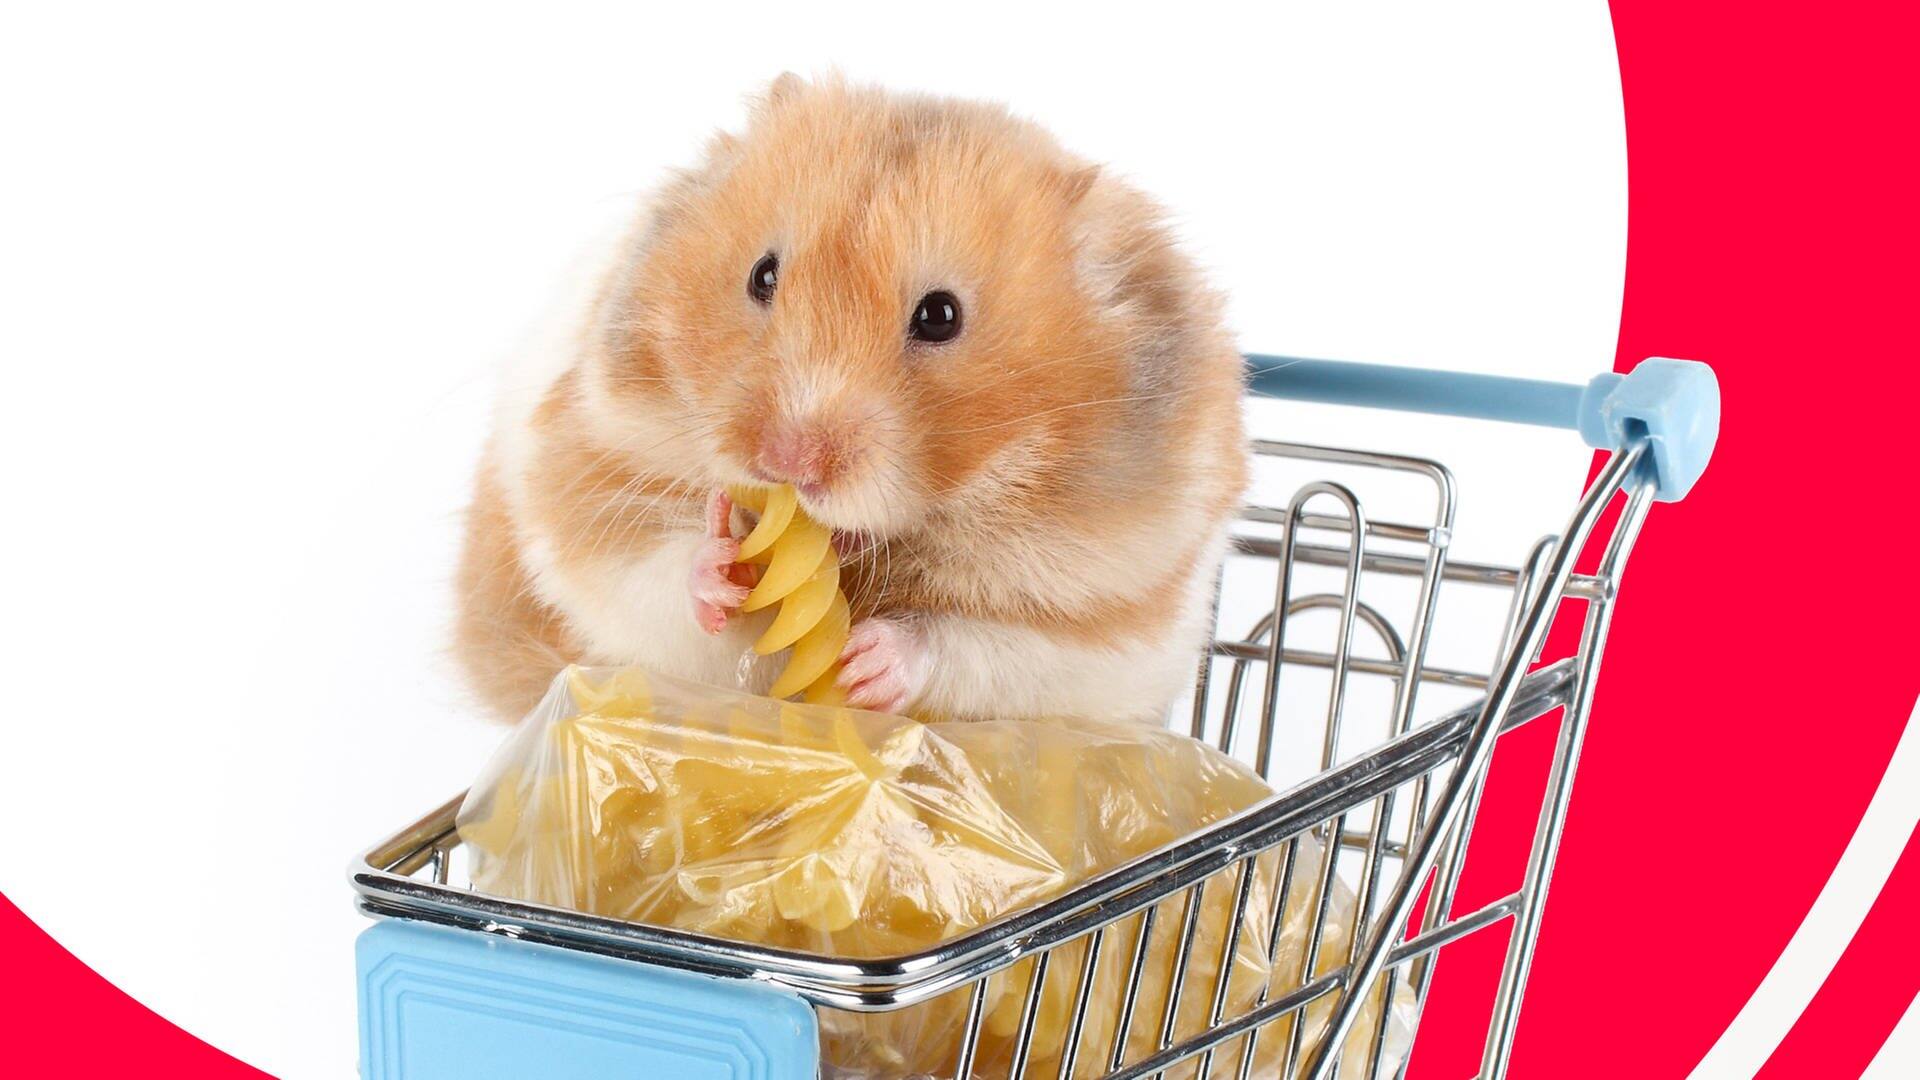 Hamster sitzt im Einkaufswagen und knabbert an Nudeln (Foto: Adobe Stock/Olesya)